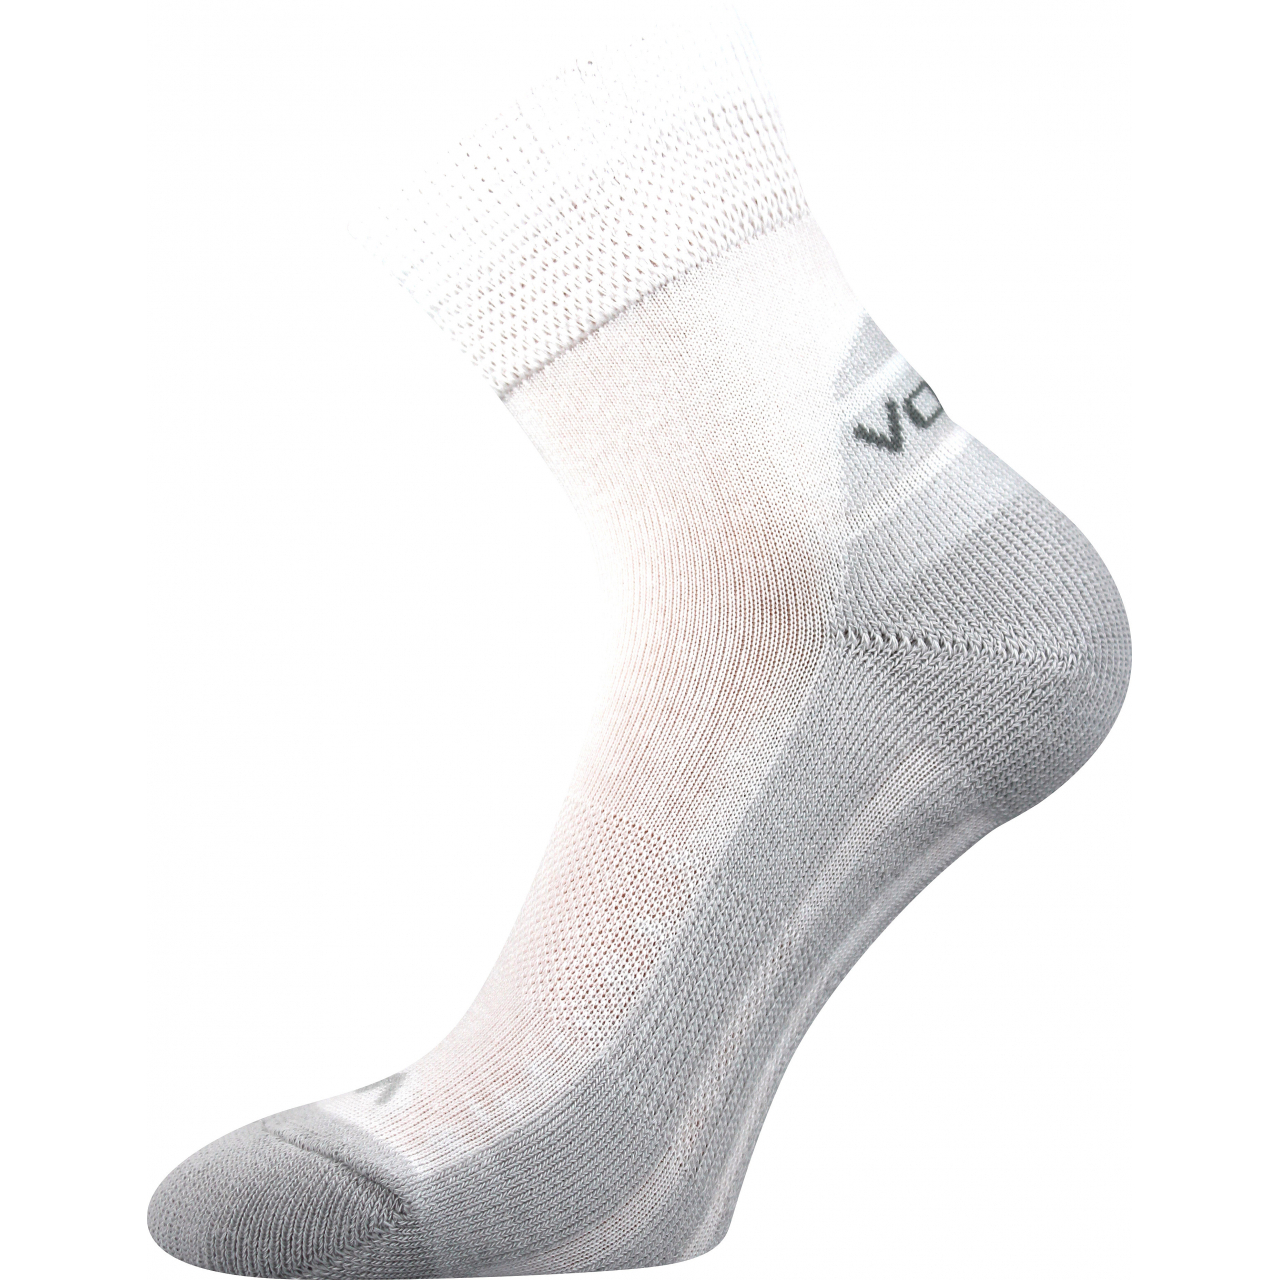 Ponožky sportovní Voxx Oliver - bílé-šedé, 39-42